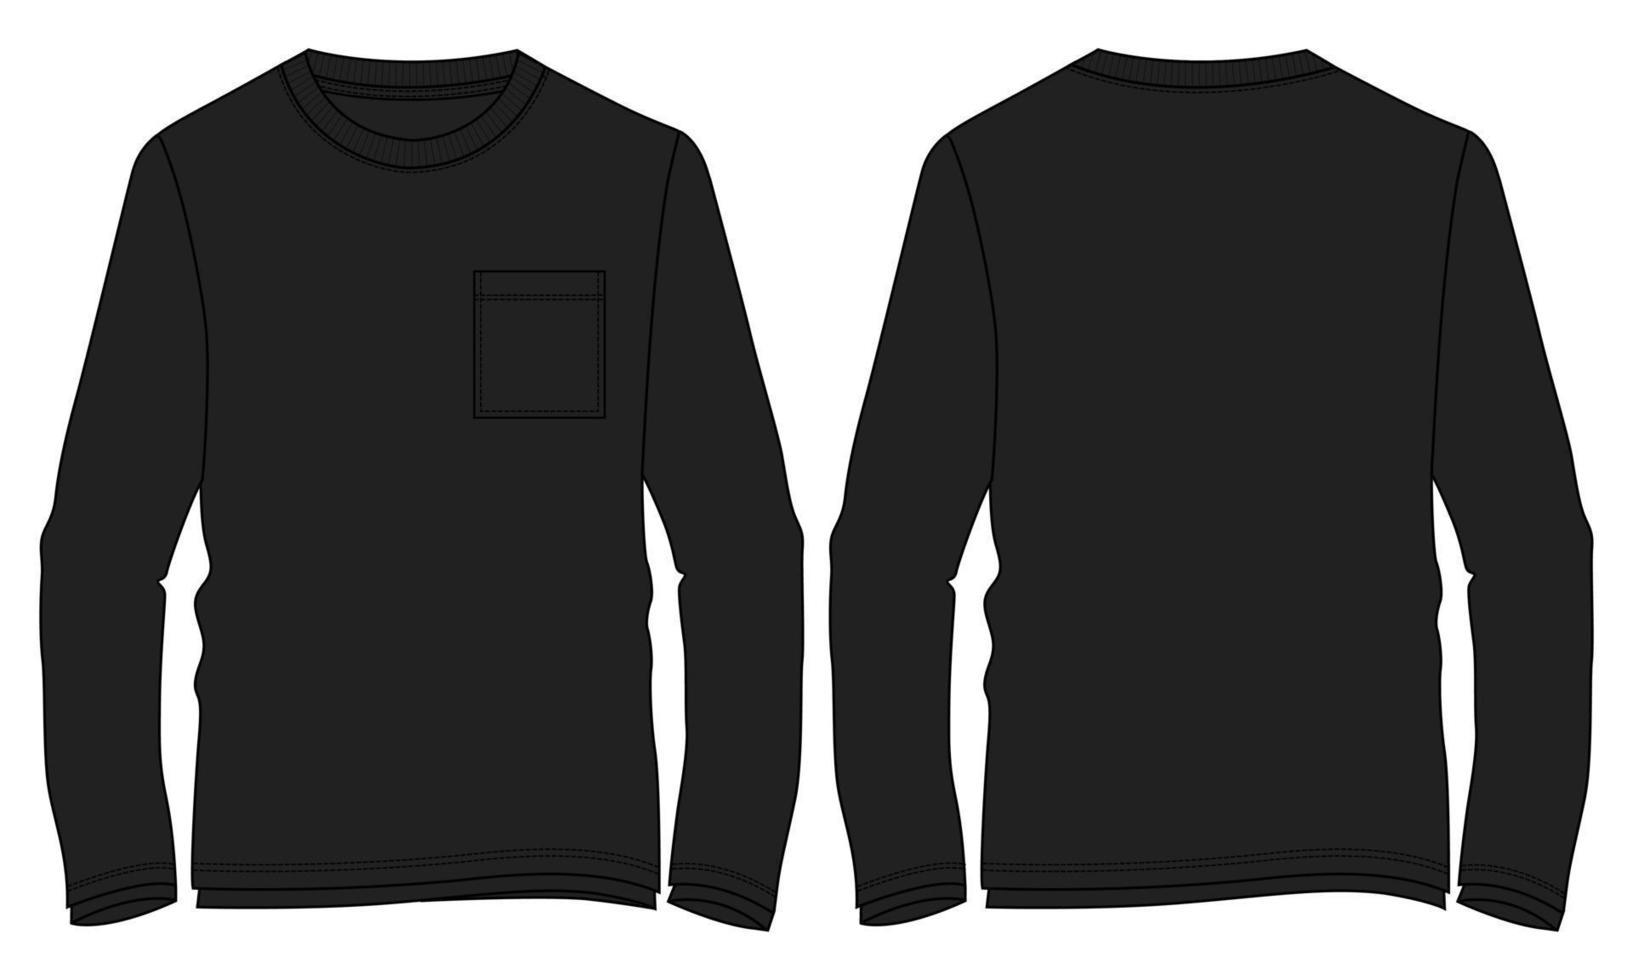 lange mouw t-shirt technische mode platte schets vector illustratie zwarte kleur sjabloon